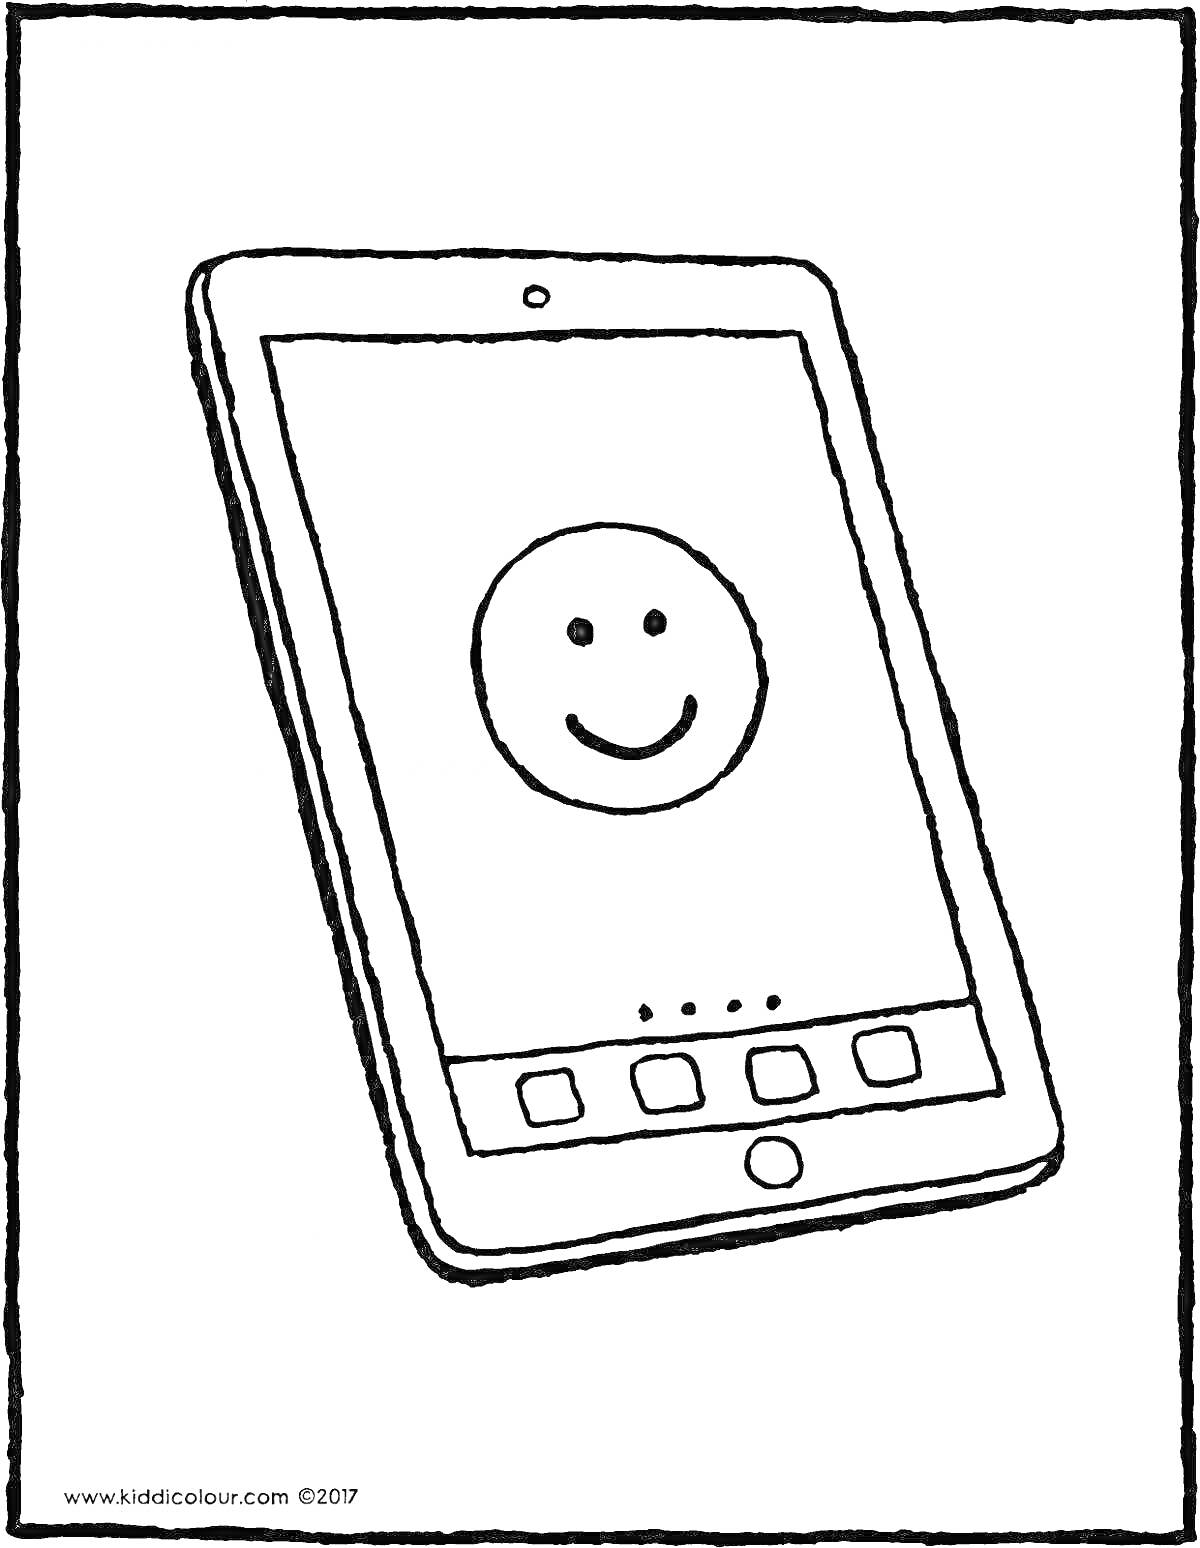 Раскраска Планшет с экраном с изображением смайлика и иконками приложений